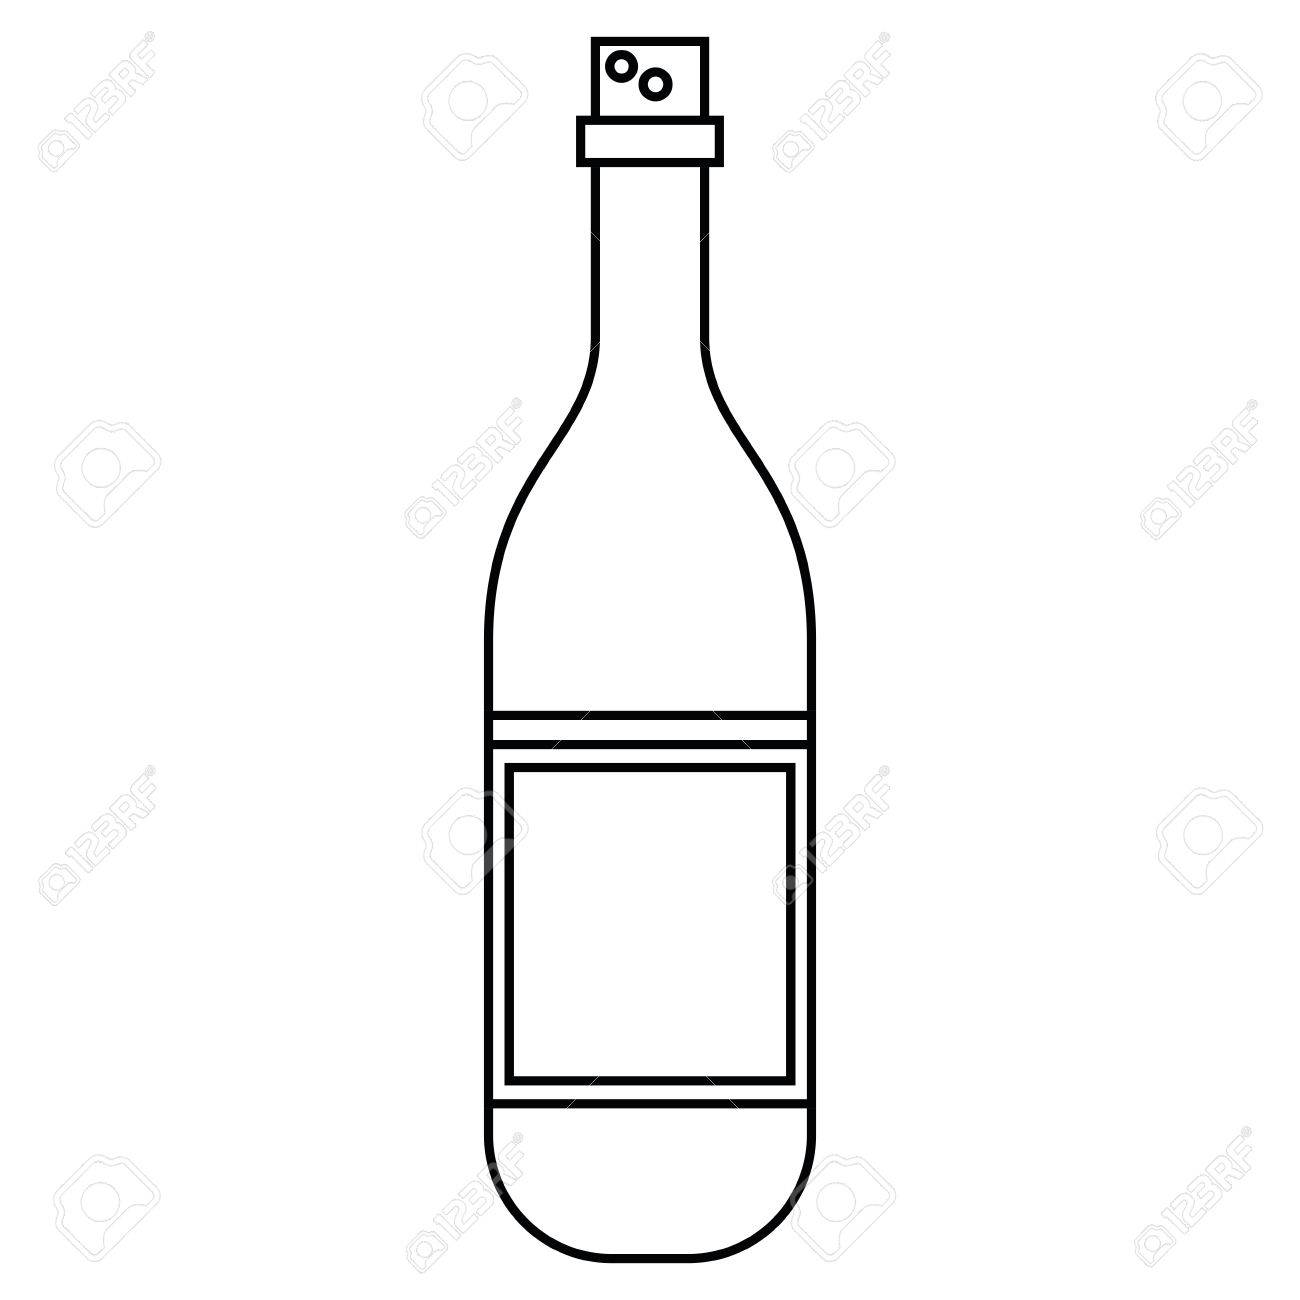 Wine Bottle Line Drawing